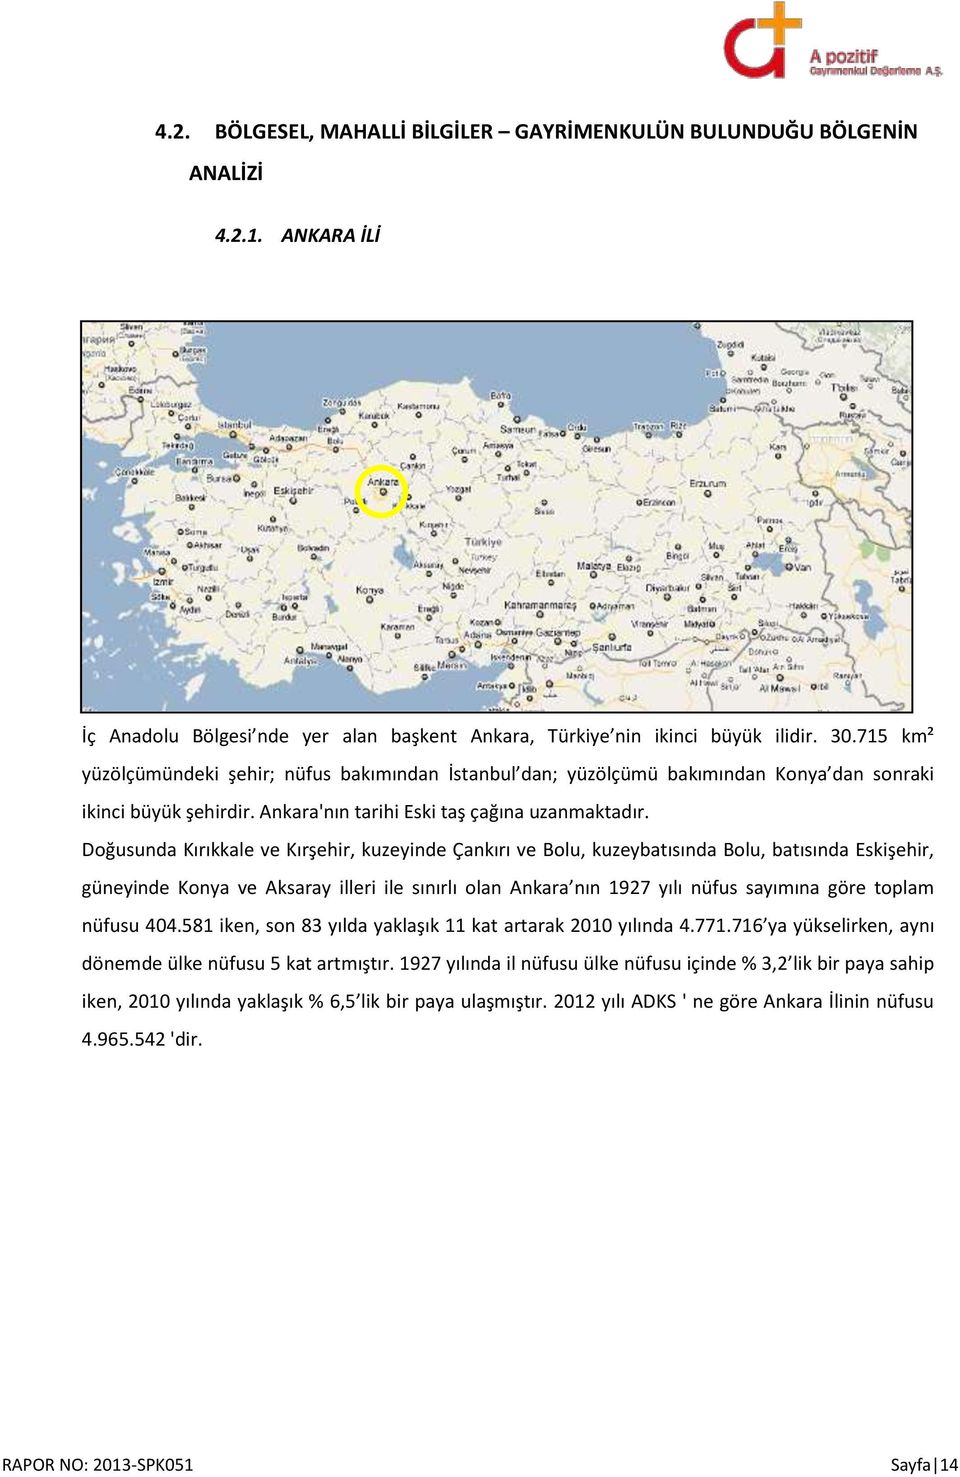 Doğusunda Kırıkkale ve Kırşehir, kuzeyinde Çankırı ve Bolu, kuzeybatısında Bolu, batısında Eskişehir, güneyinde Konya ve Aksaray illeri ile sınırlı olan Ankara nın 1927 yılı nüfus sayımına göre